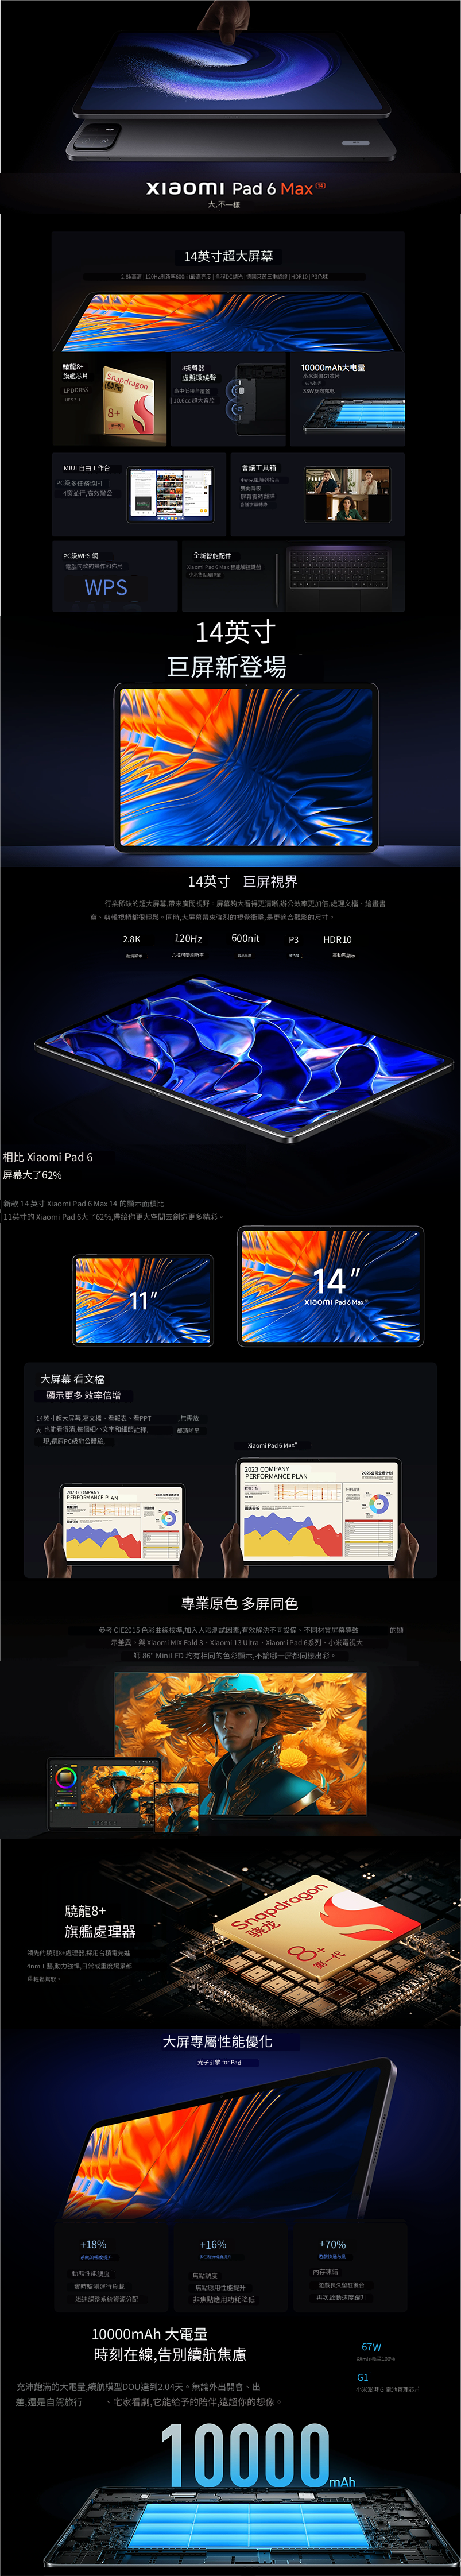 Xiaomi Pad 6 Max 14.0